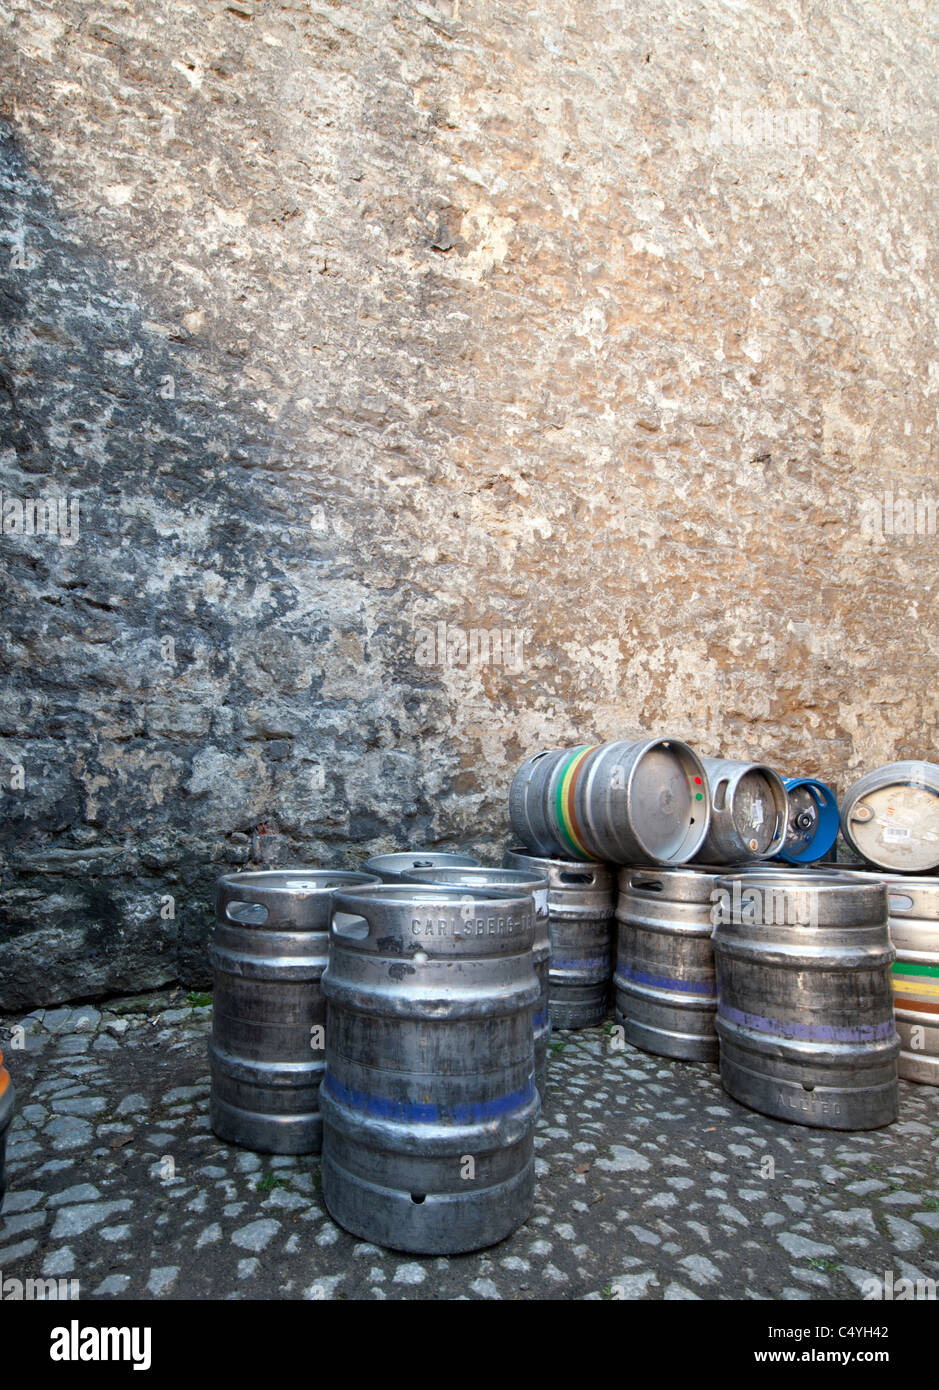 Barils de bière d'être stockée sur une rue pavée en pierre). La Taverne de gazon Oxford pub Banque D'Images